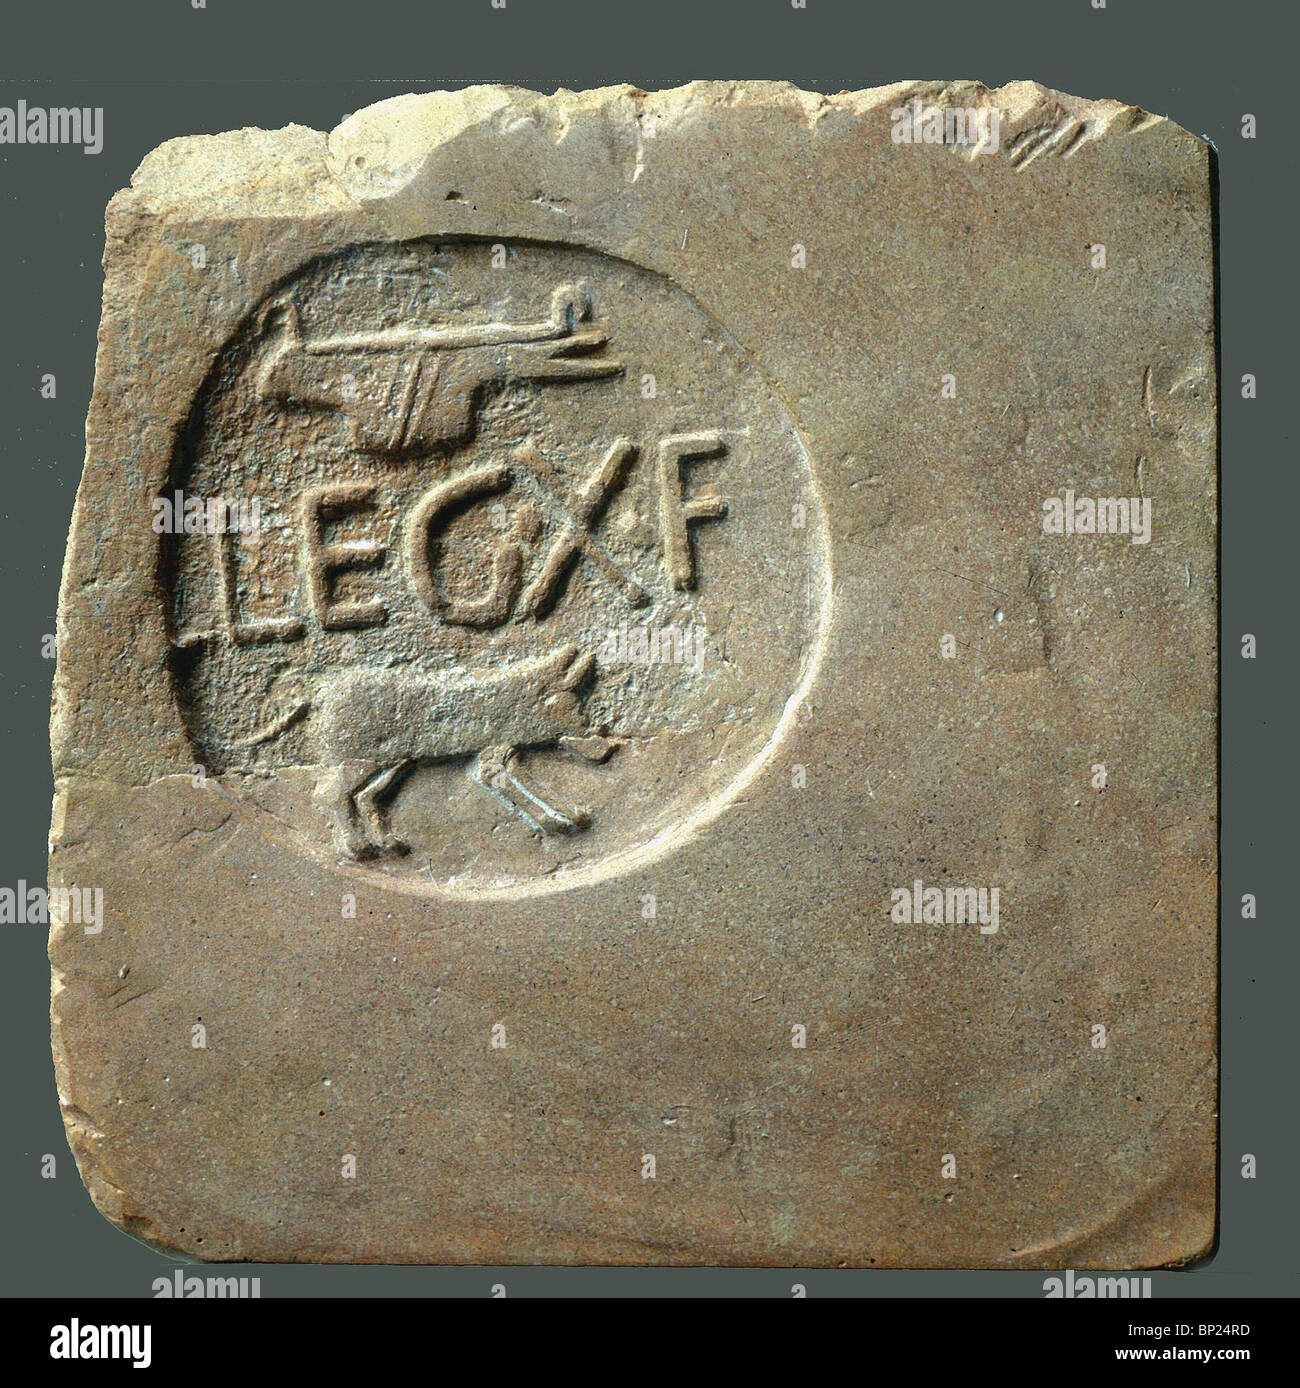 Mattoni di argilla stampigliato GAMBA X F(RATERNIS) con l'immagine di un maiale selvatico che era il loro simbolo. Molti di tali mattoni sono stati trovati in Foto Stock